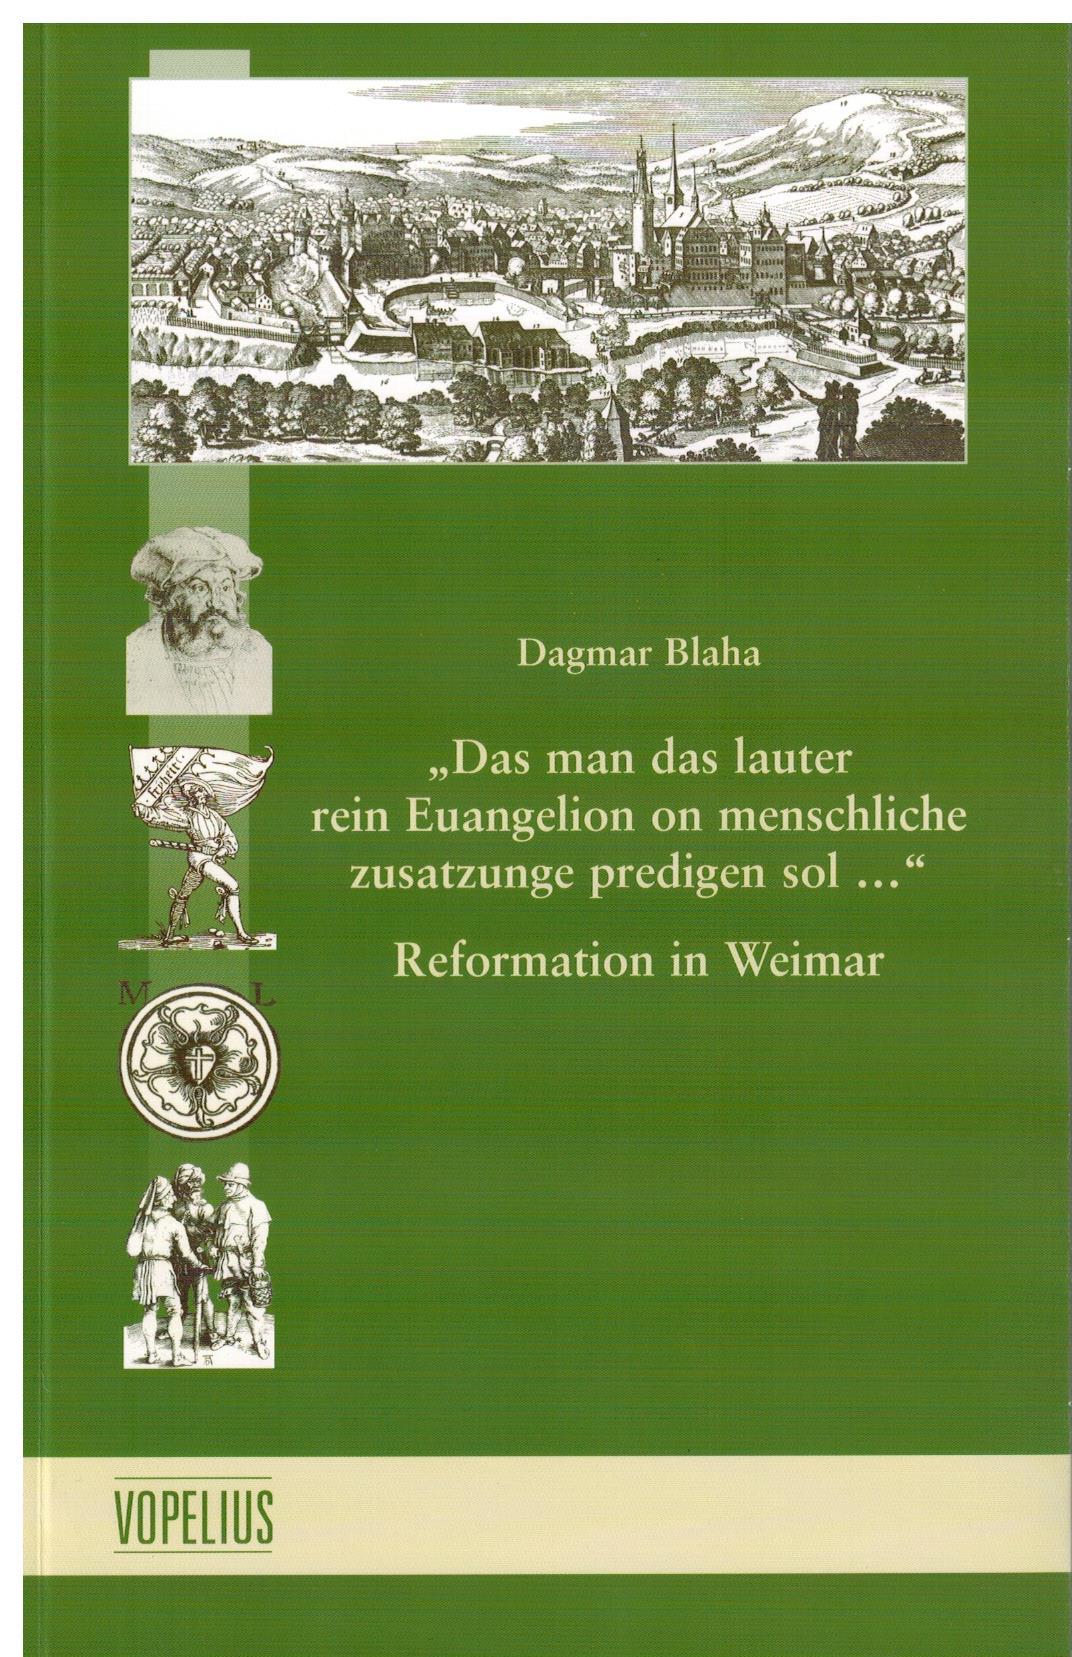 "Das man das lauter rein Euangelion on menschliche zusatzunge predigen sol...", Reformation in Weimar Bd 13